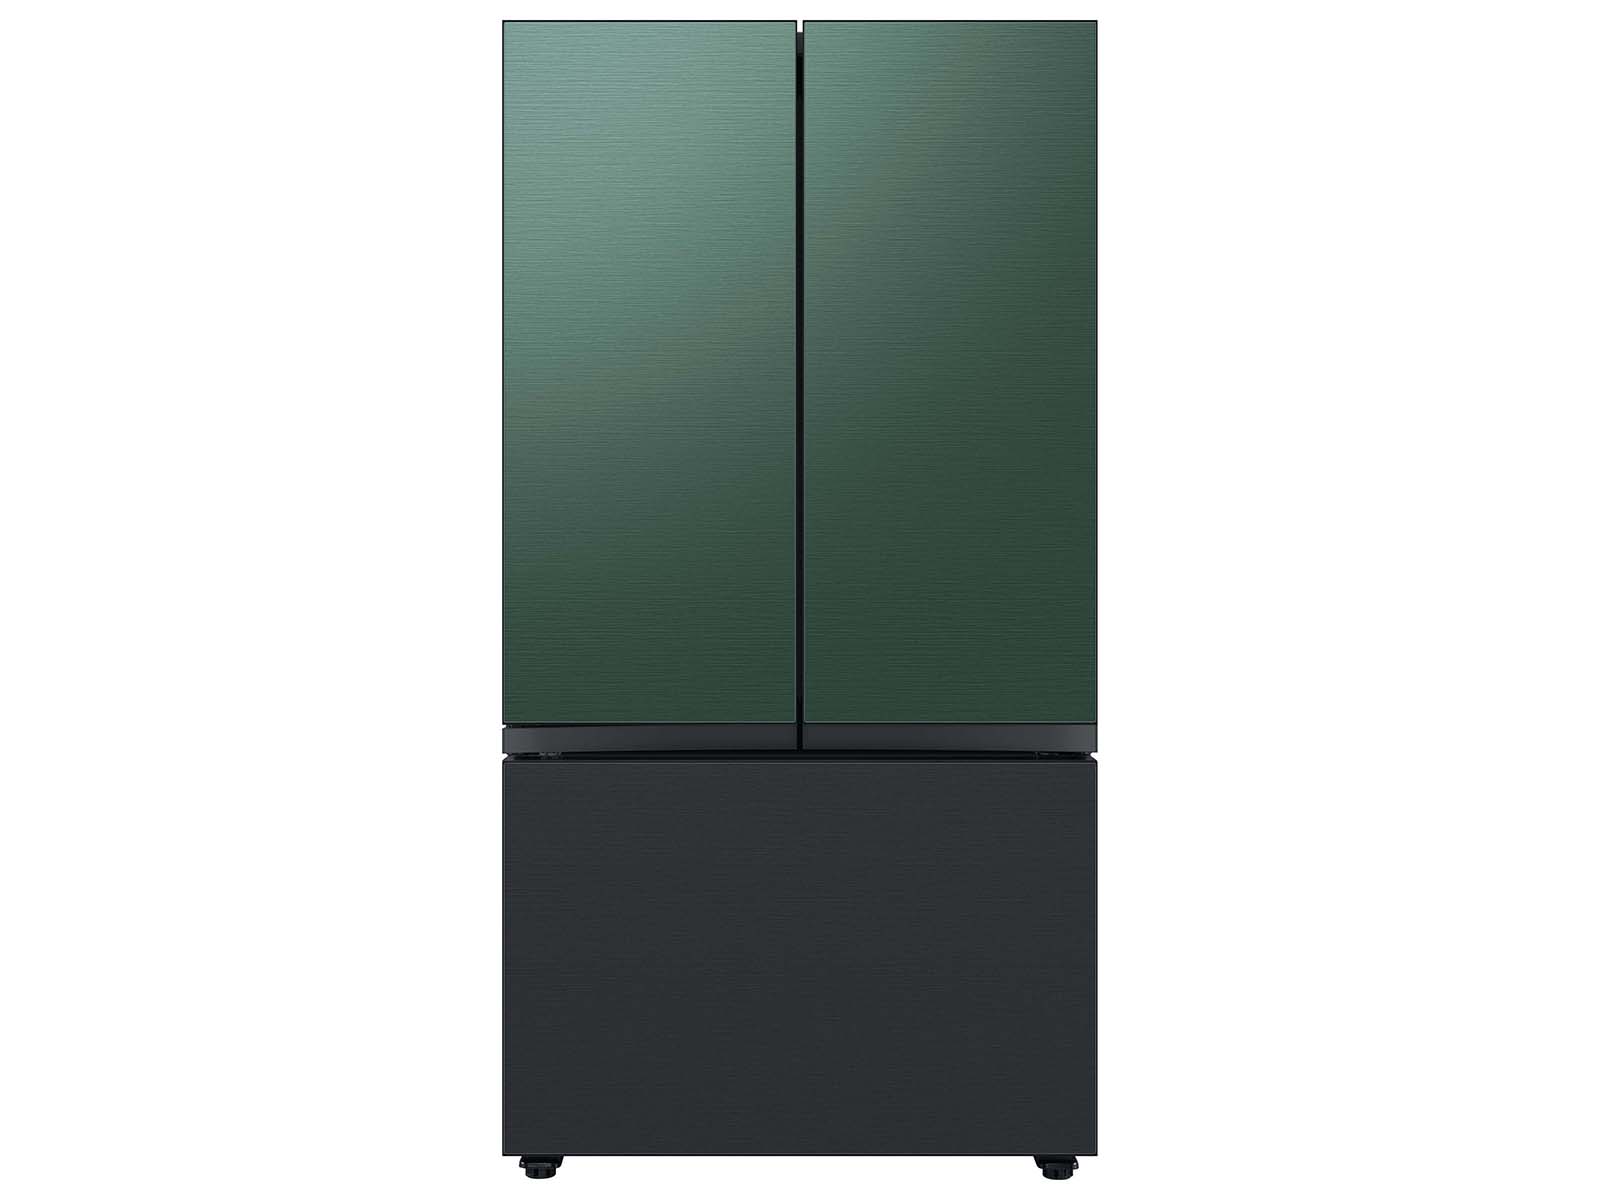 Thumbnail image of Bespoke 3-Door French Door Refrigerator Panel in Matte Black Steel - Bottom Panel